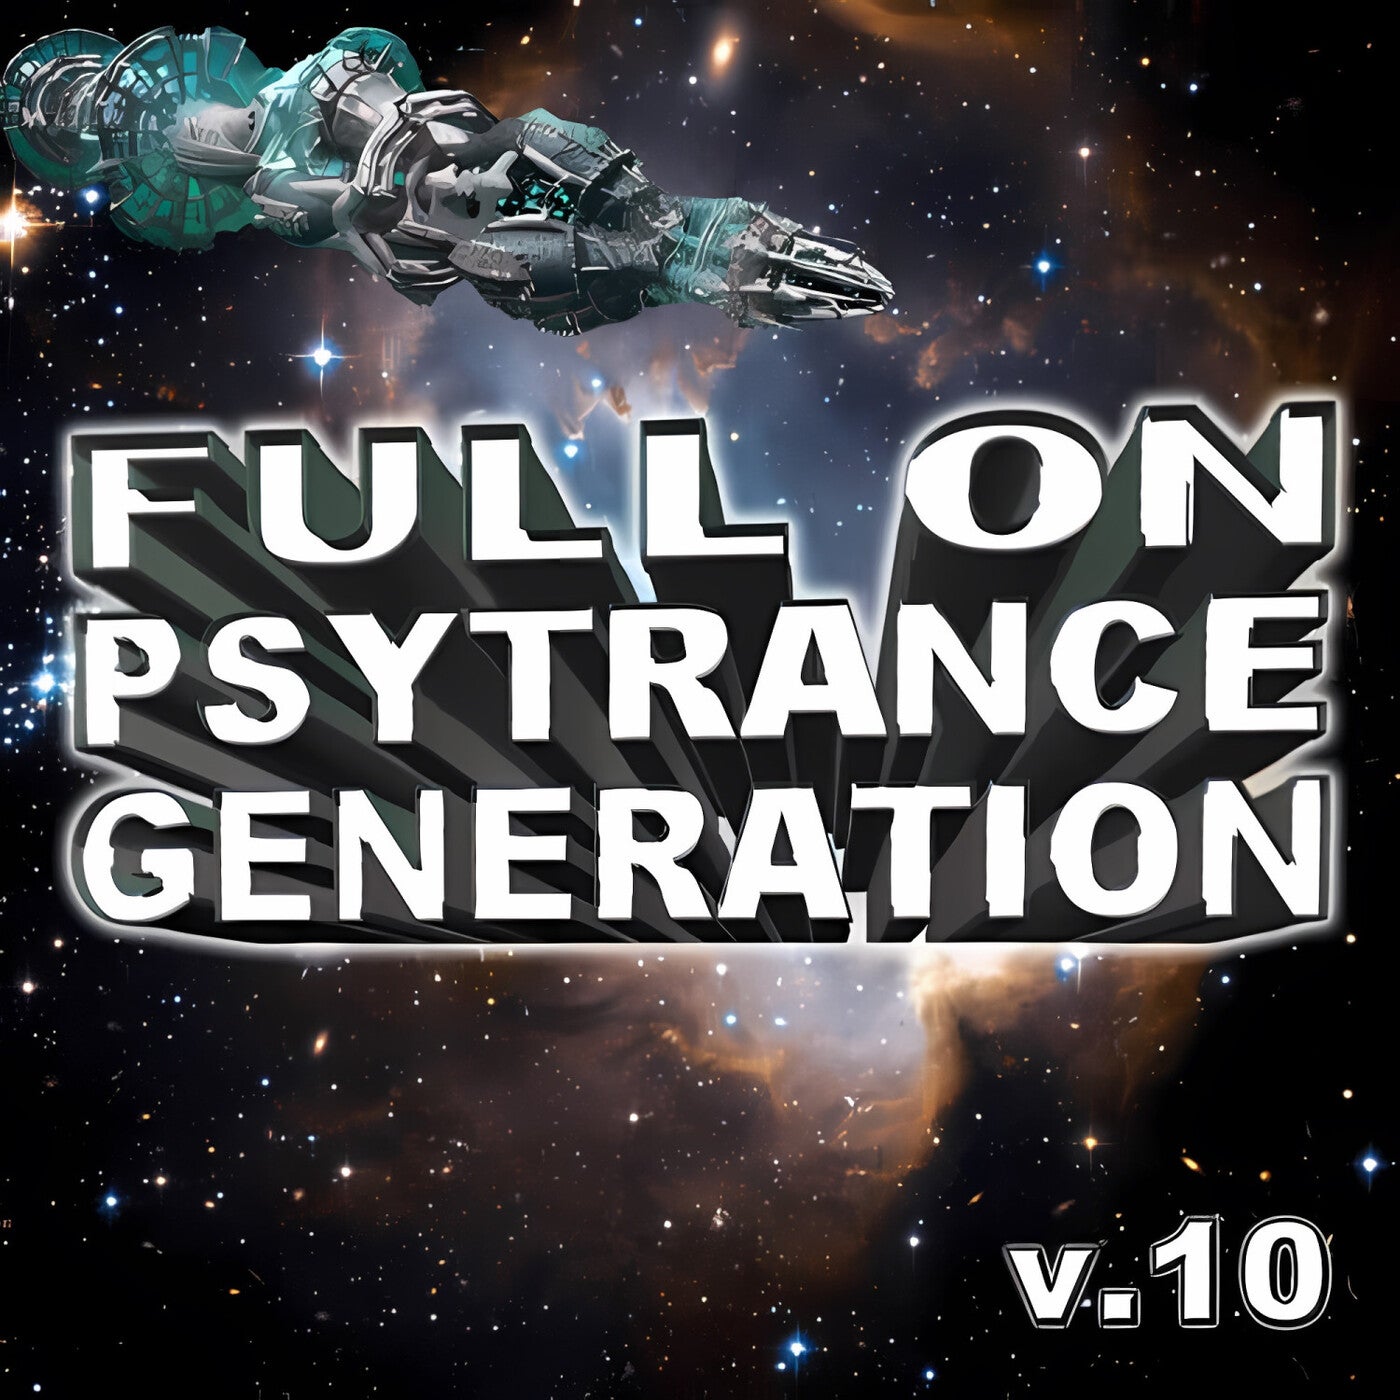 Full On Psytrance Generation, Vol. 10